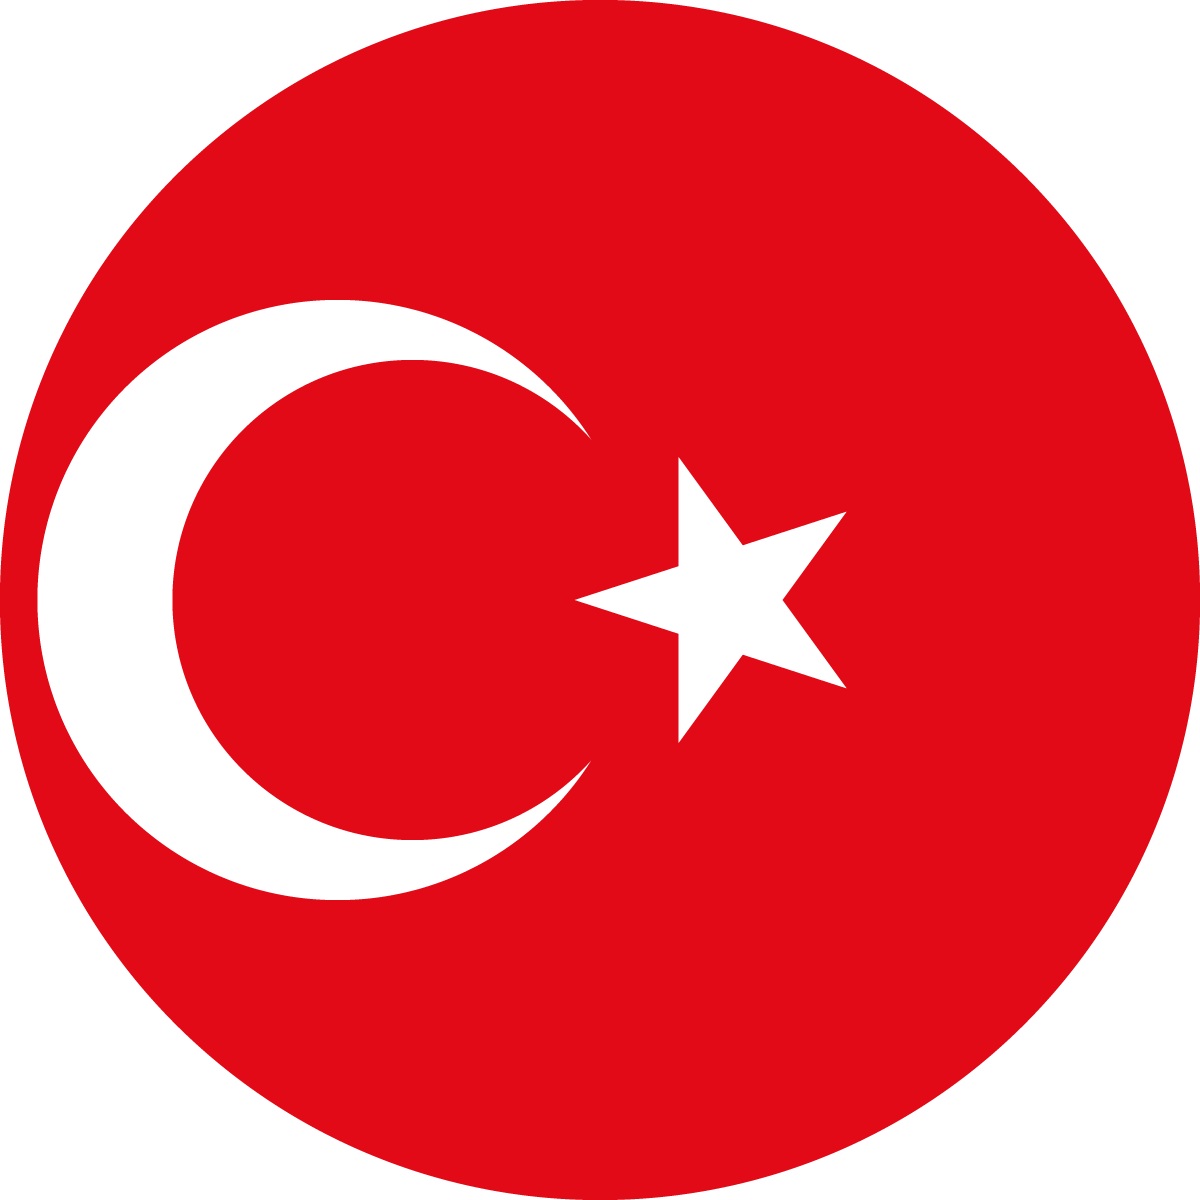 Copy of Copy of Copy of Copy of Copy of Turkey